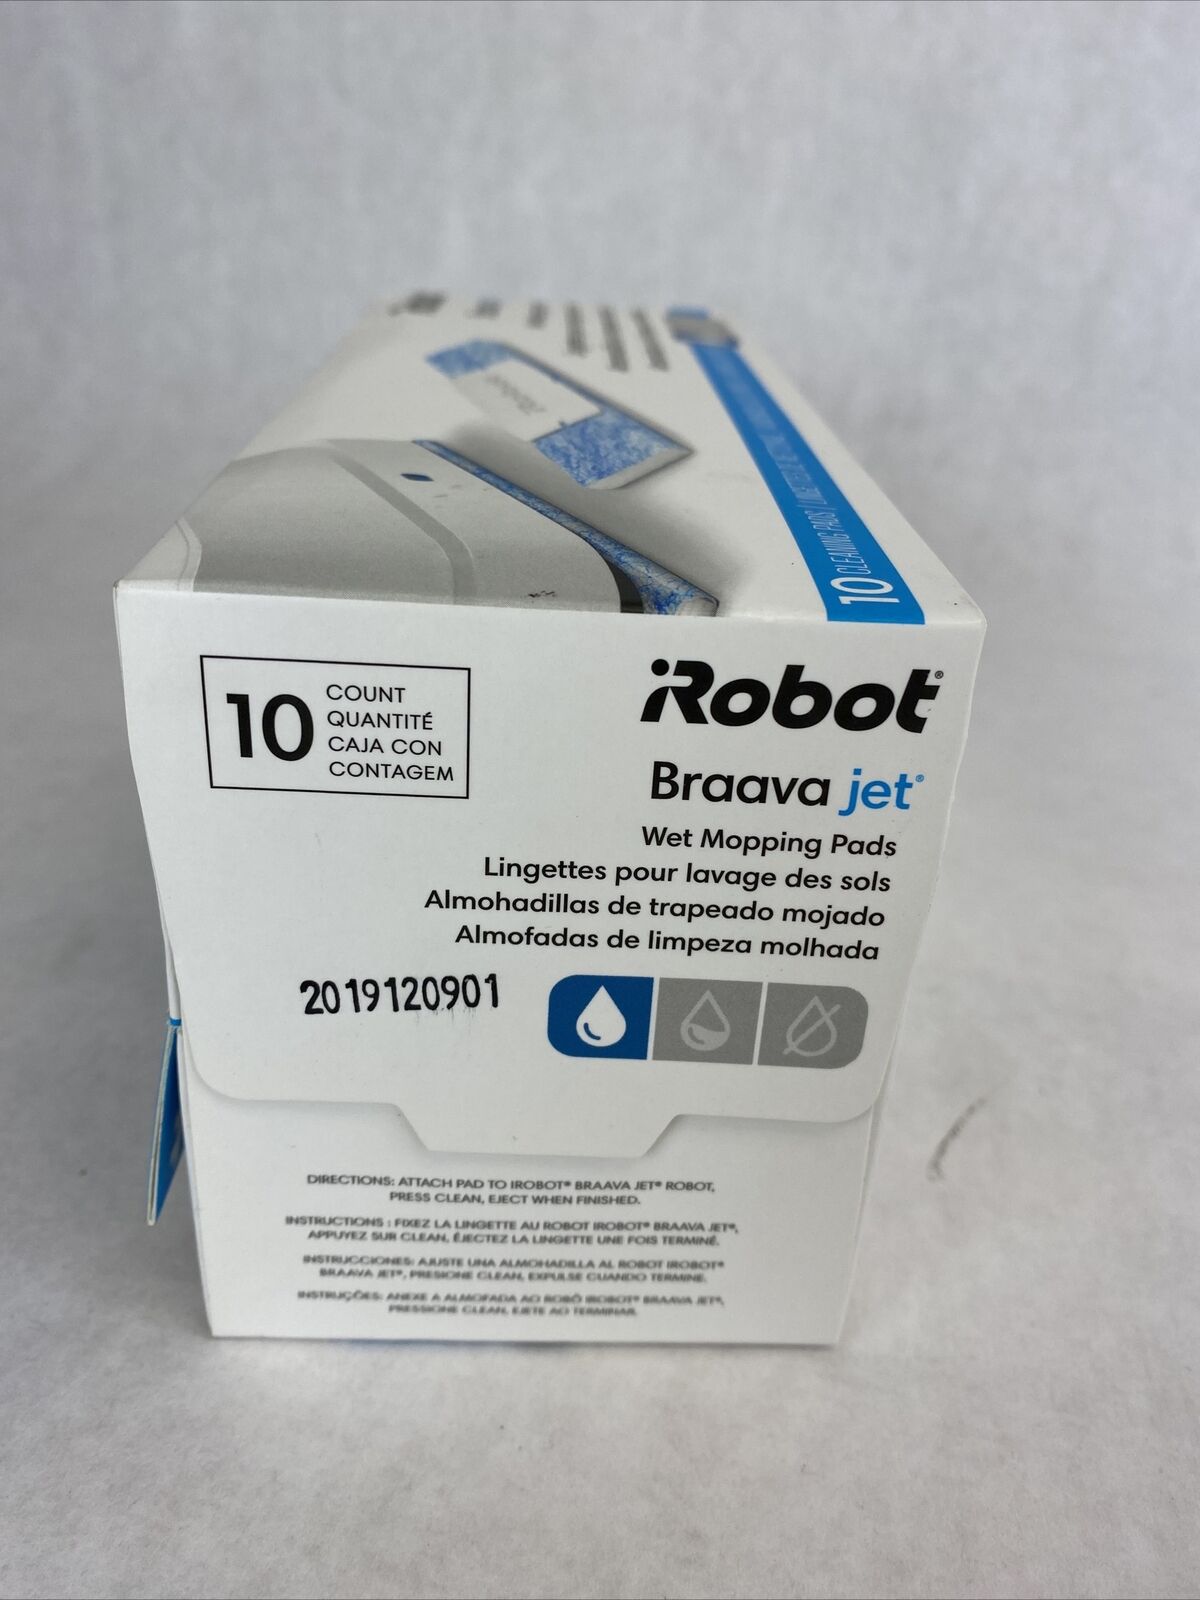 iRobot Braava jet wet mopping pads 10ct per box